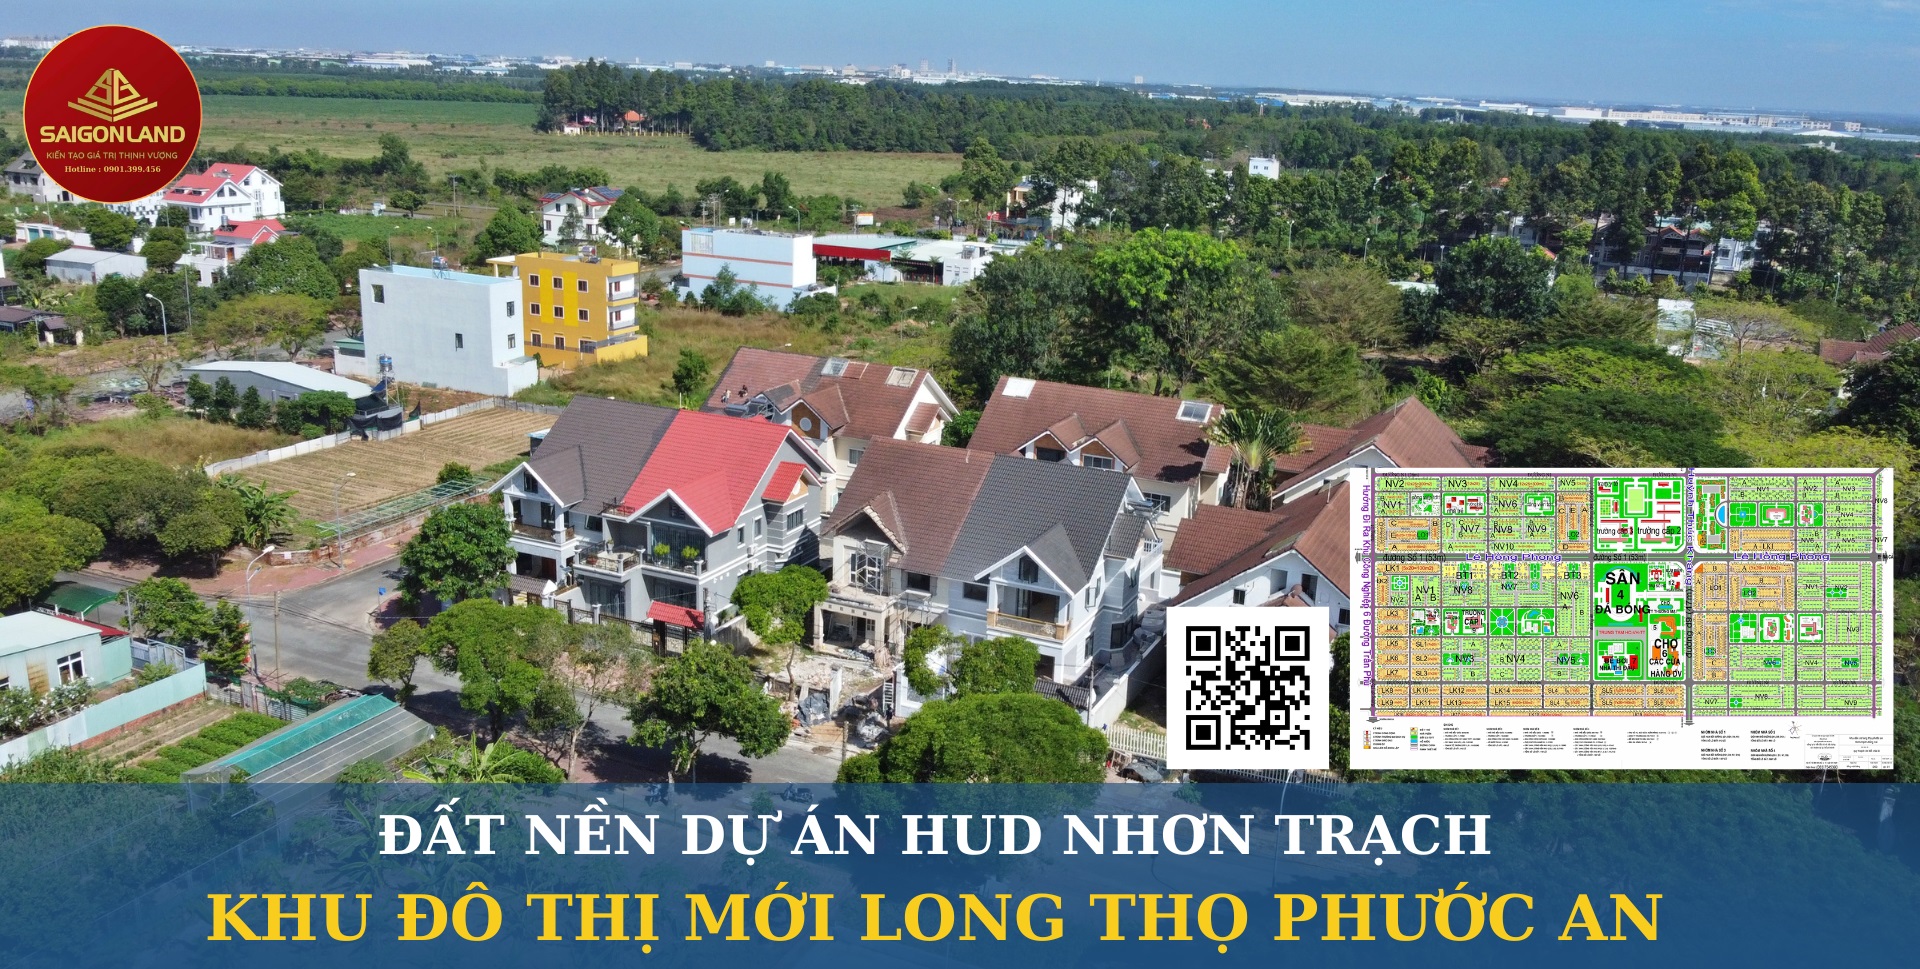 Saigonland Nhơn Trạch - Chuyên đầu tư - mua nhanh bán nhanh đất nền dự án Hud - XDHN - Ecosun - - Ảnh chính